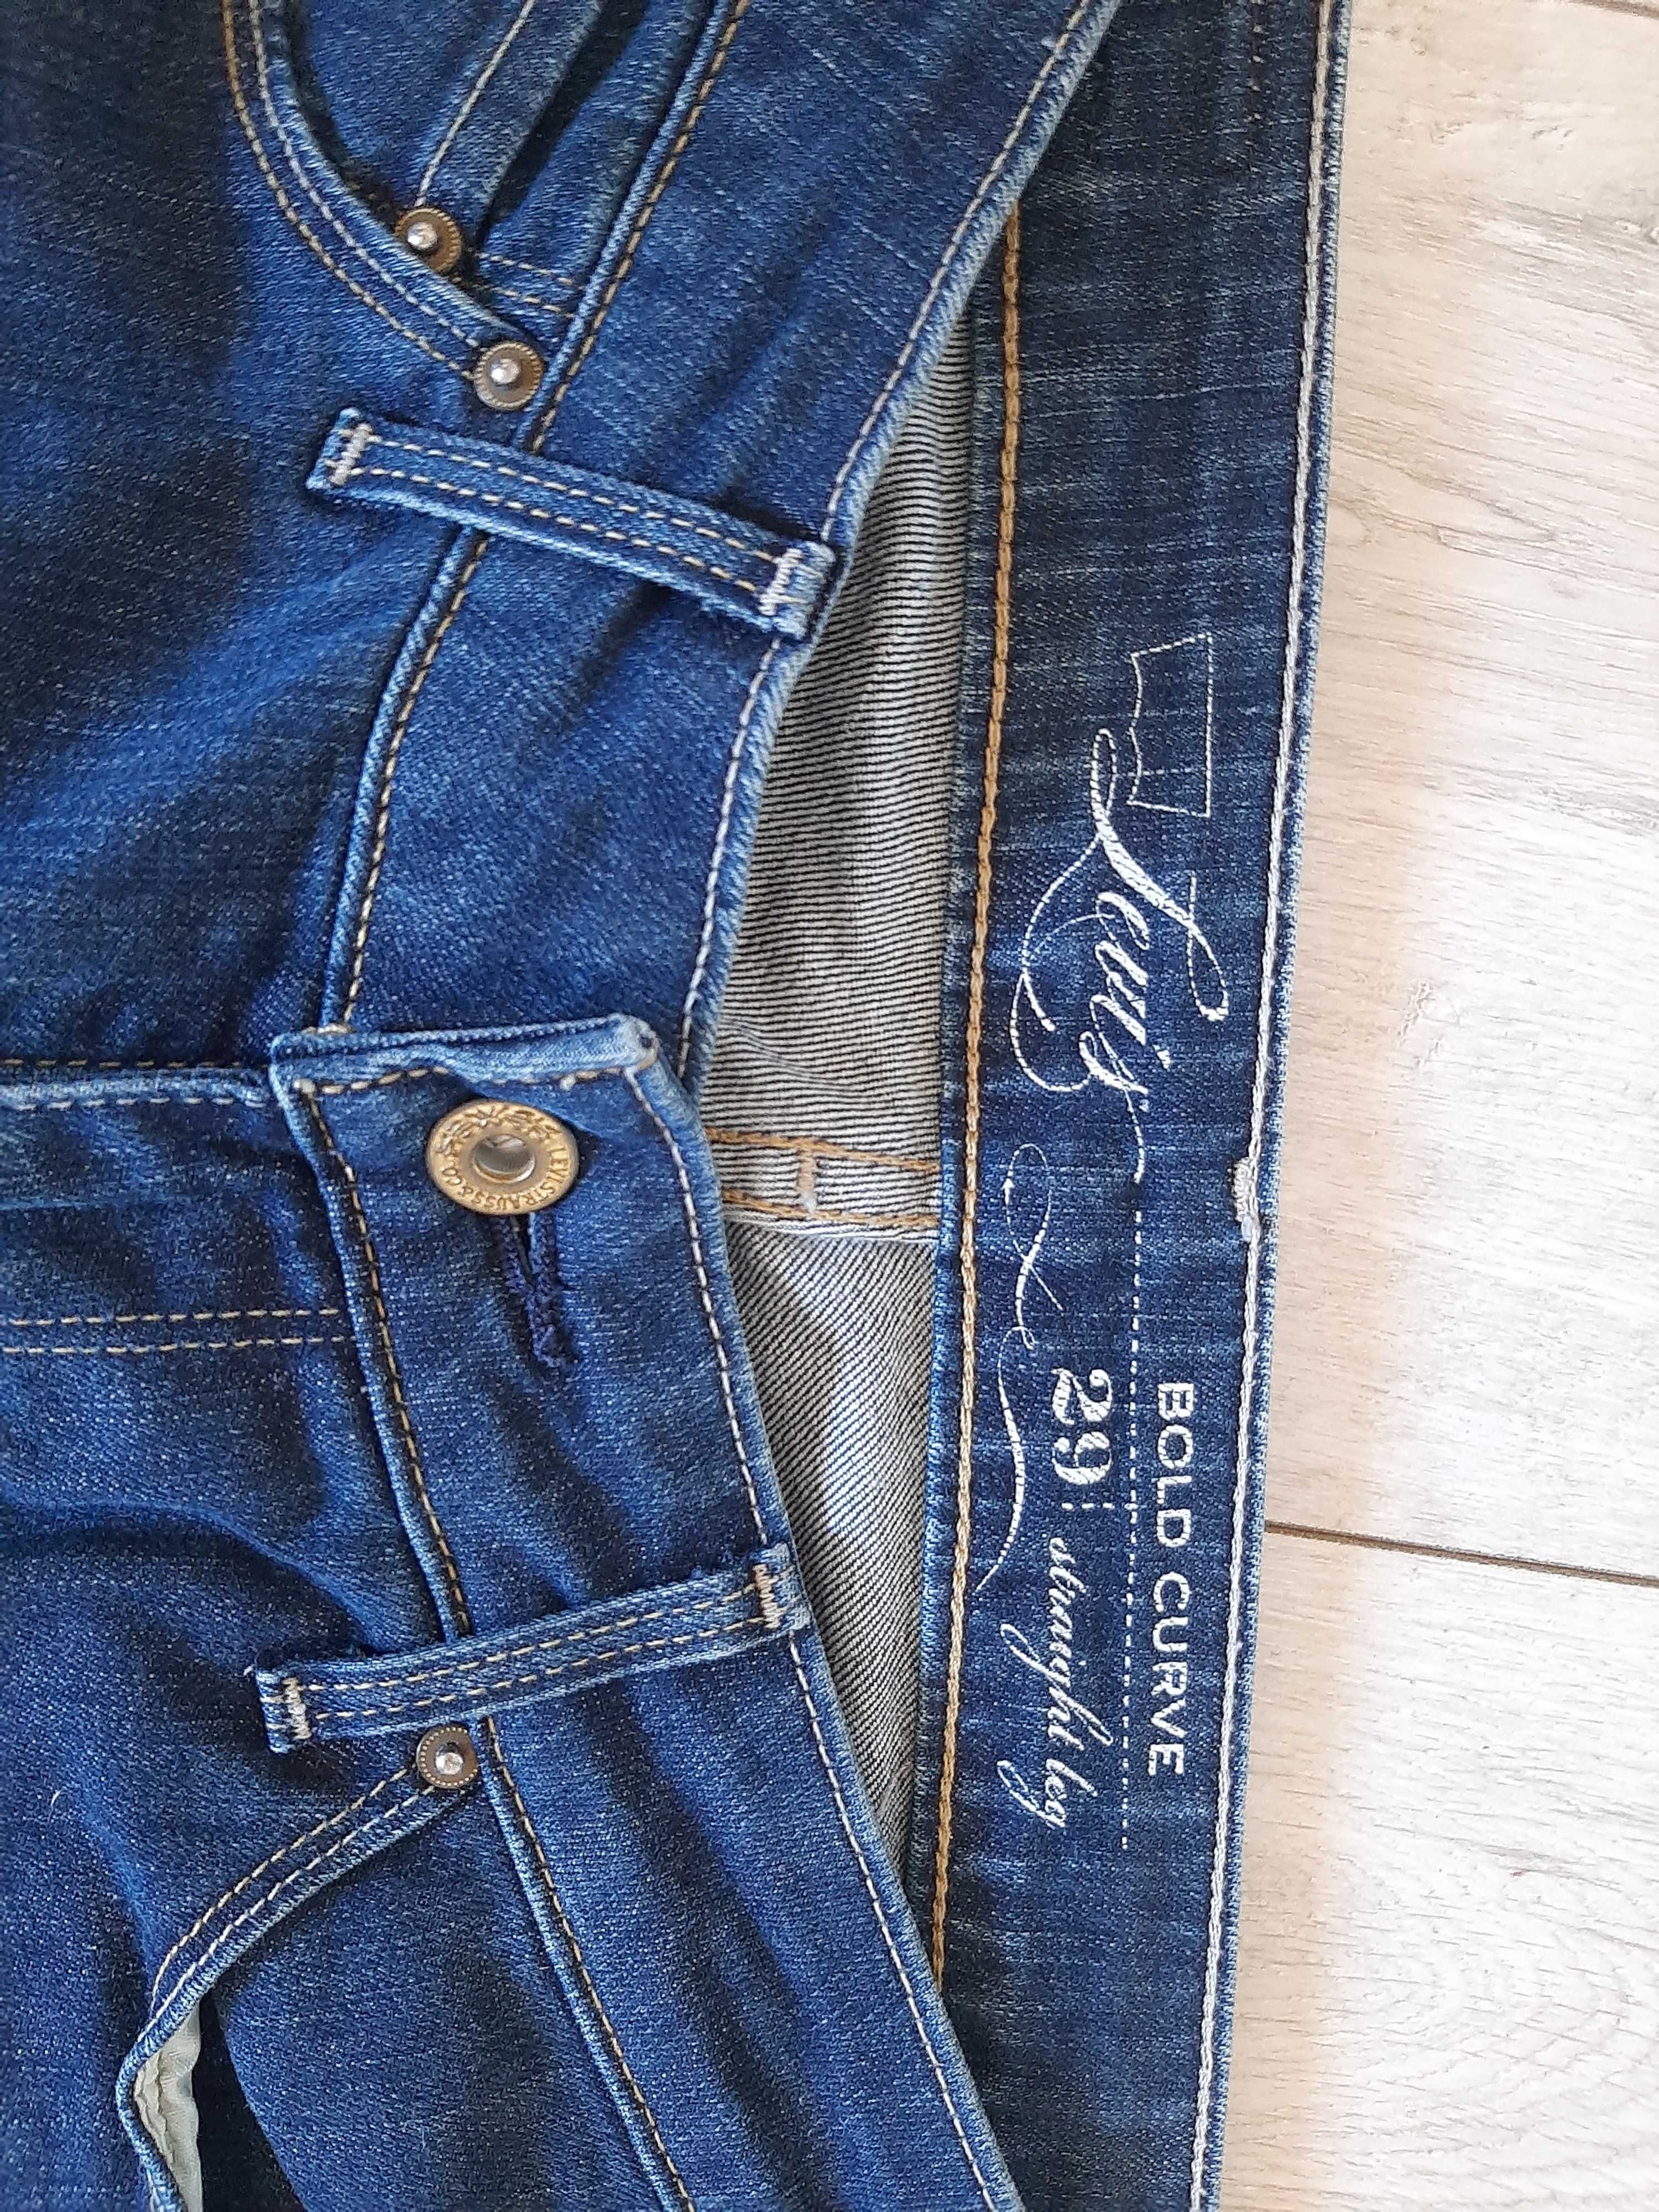 Spodnie jeans Levis nowe bez etykiety